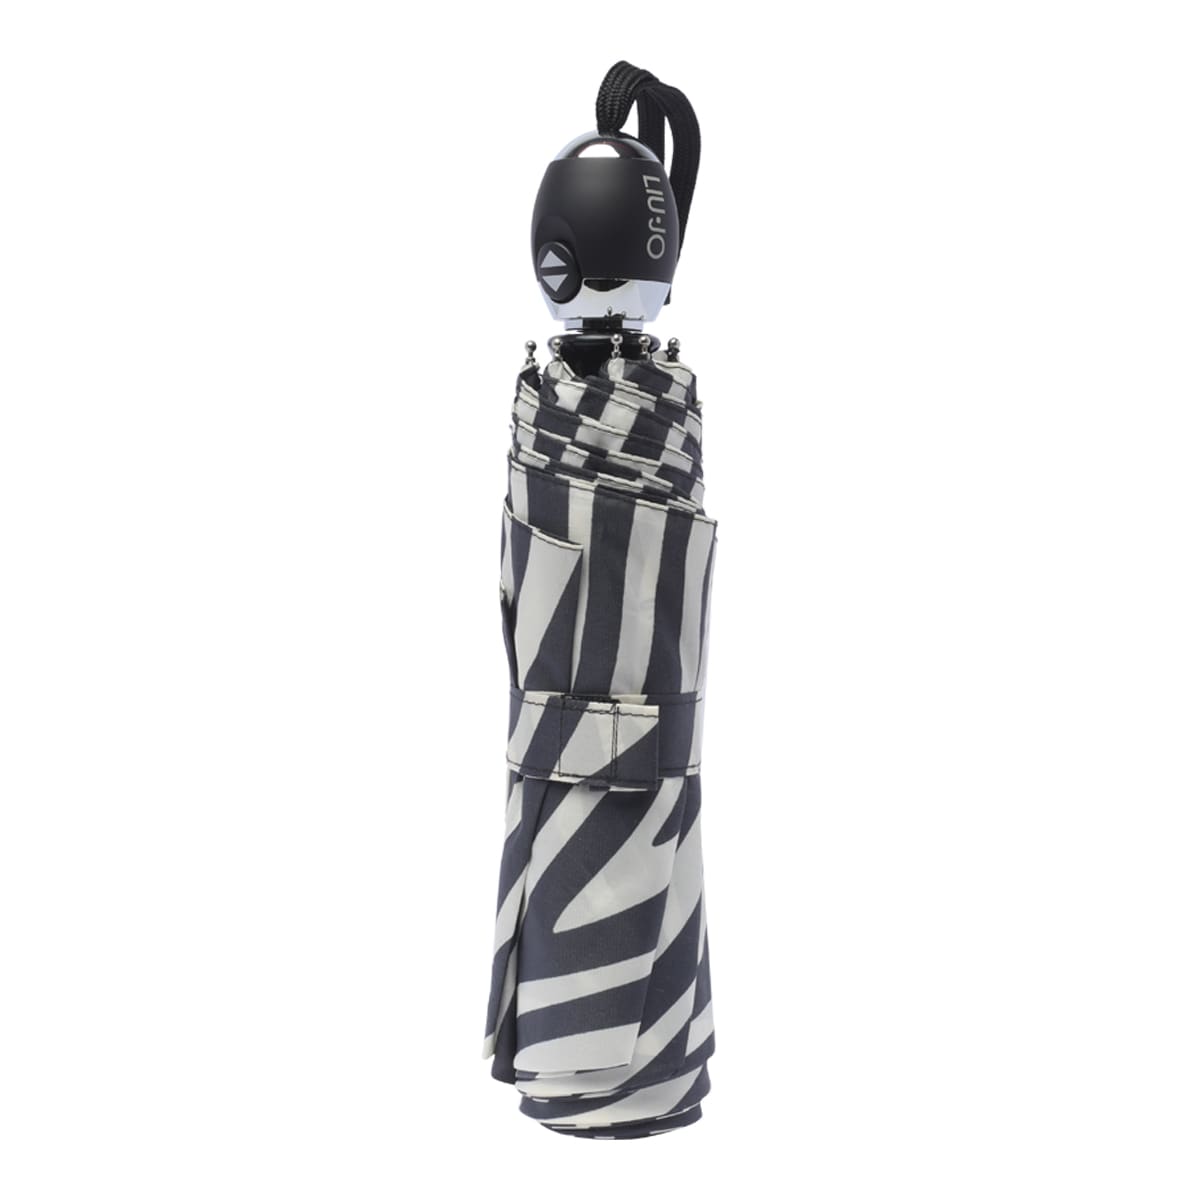 Shop Liu •jo Zebra Motif Umbrella In Black